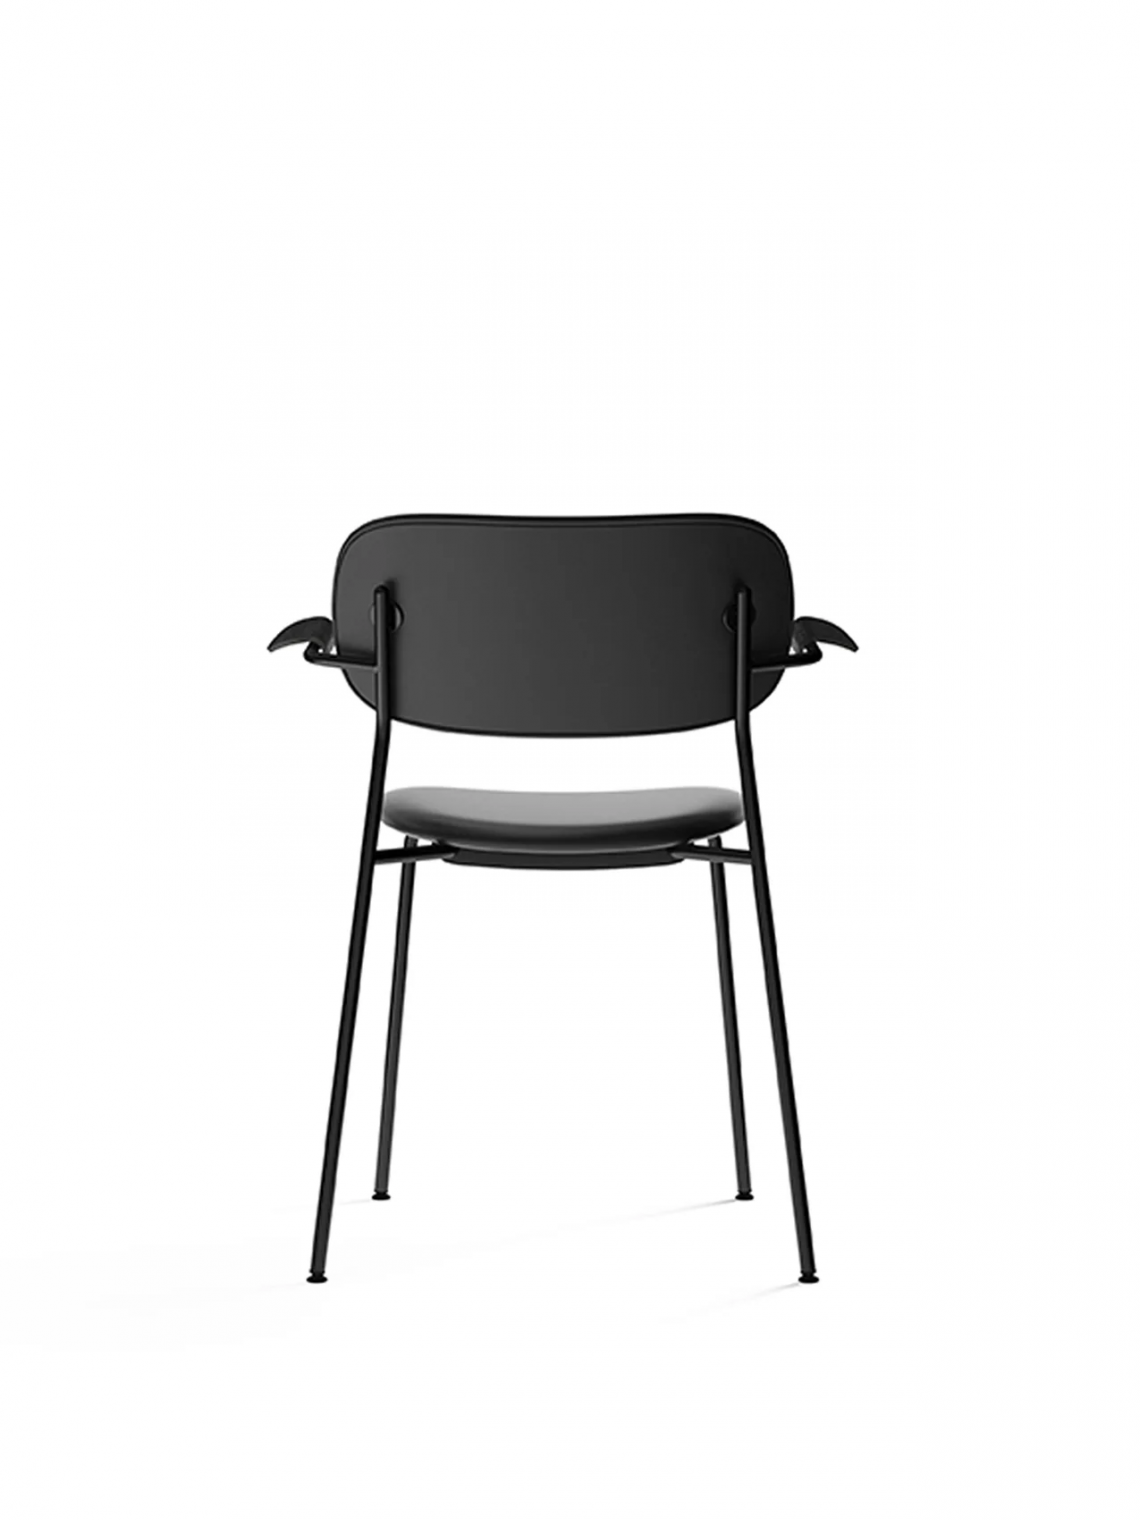 Co with armrest, Black, Veneer餐椅细节图2